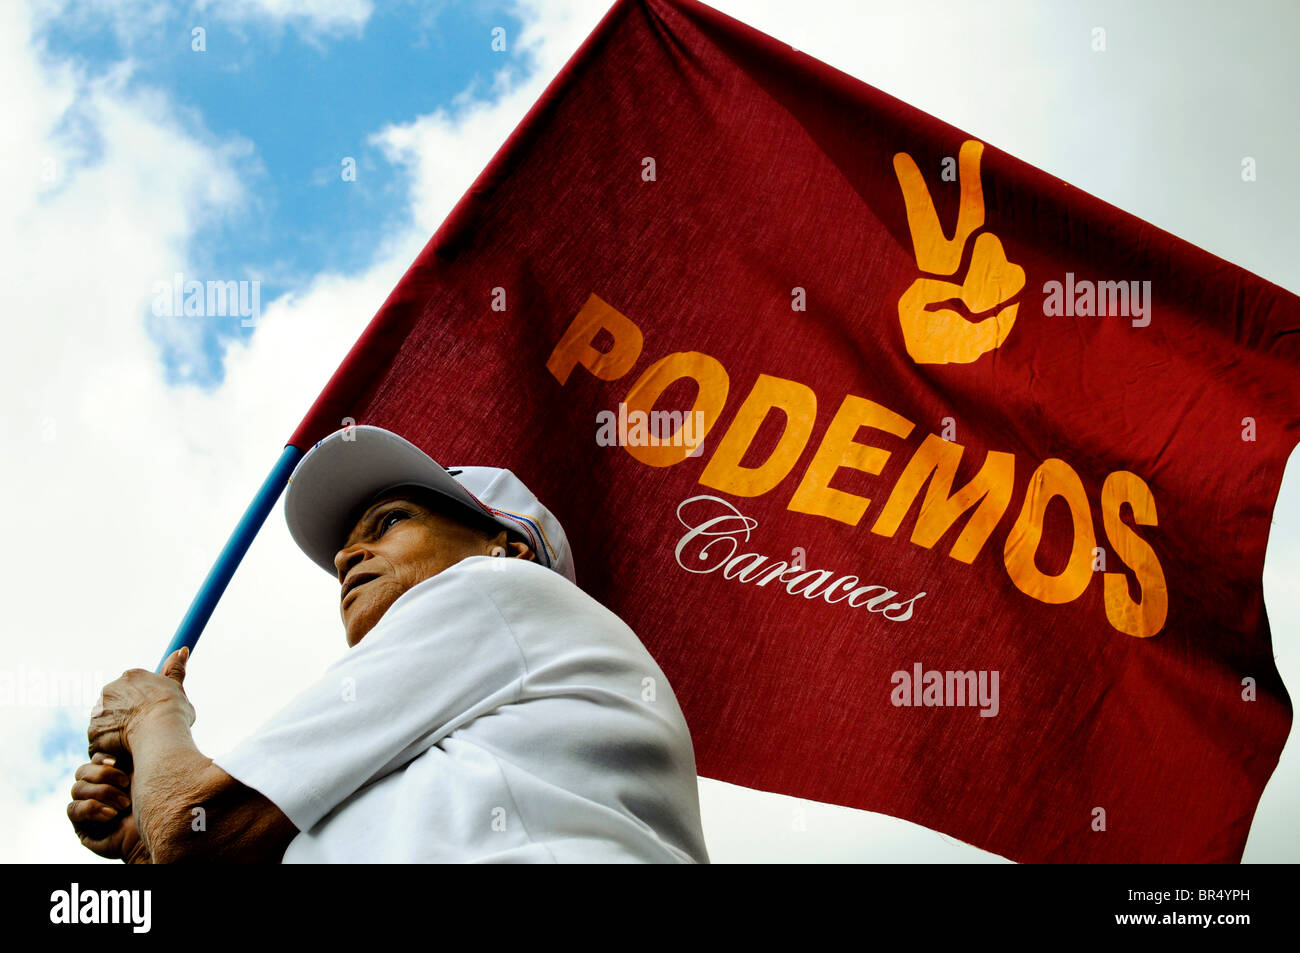 Venezuelans march in opposition of Hugo Chavez in Caracas Venezuela. Stock Photo